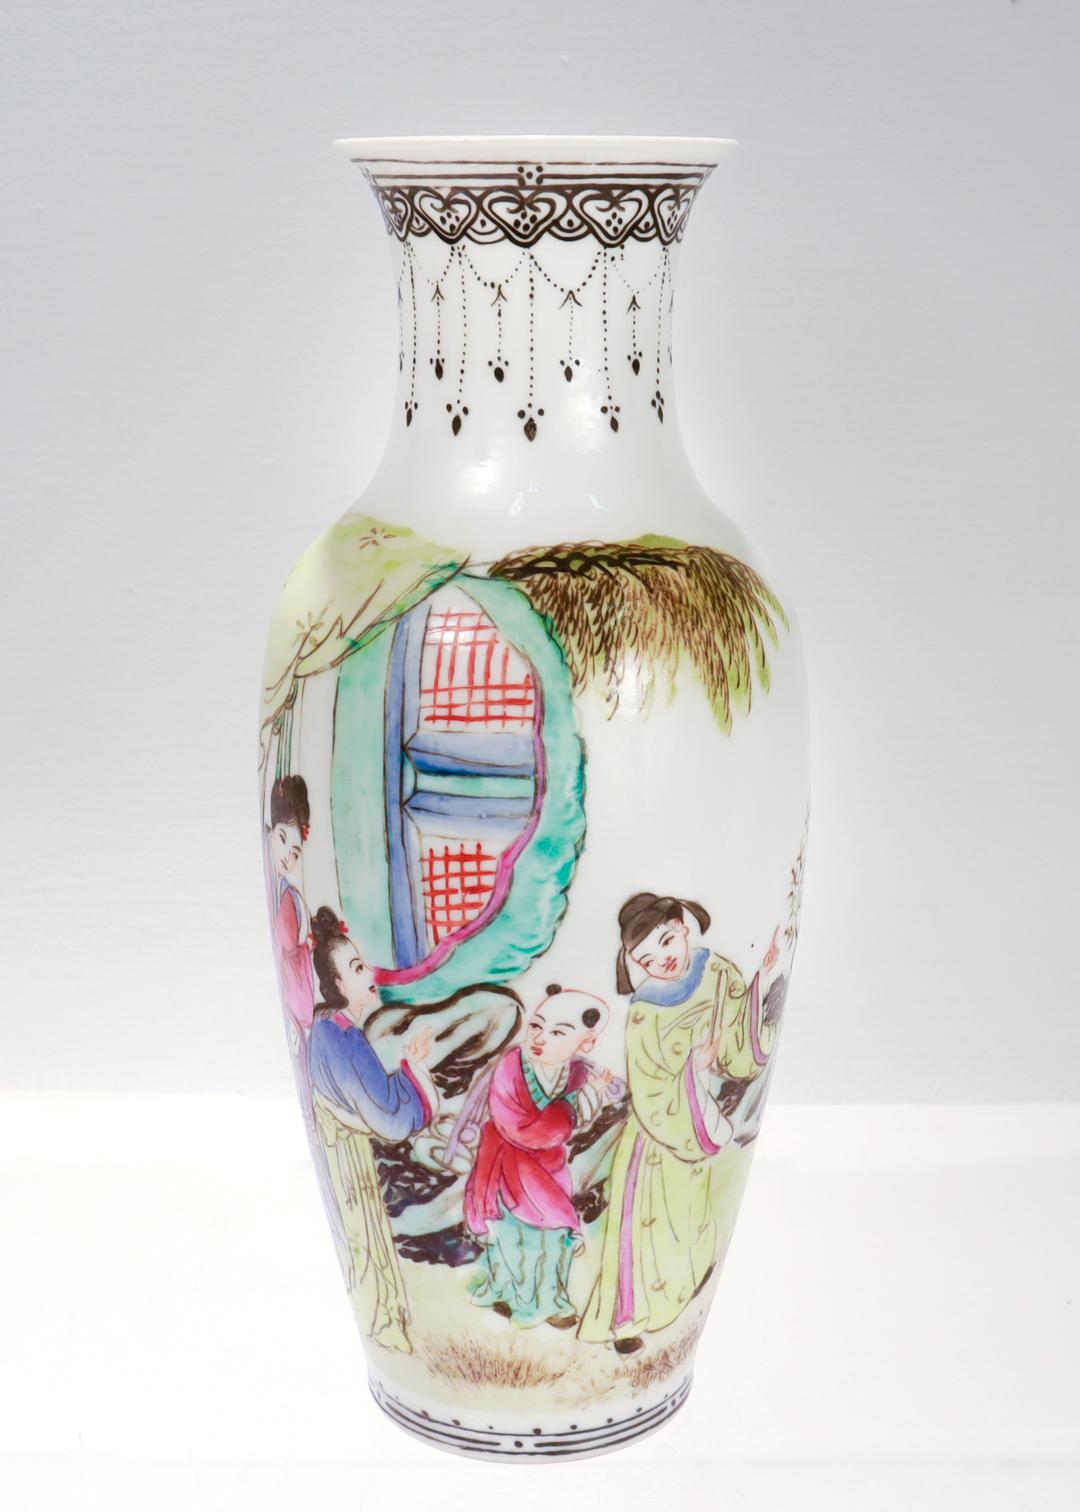 Vase en porcelaine d'exportation chinoise.

En forme de balustre.

Décorée d'une scène peinte représentant deux hommes et deux femmes en habits traditionnels chinois. À l'arrière-plan se trouvent des arbres et un affleurement rocheux dans un style